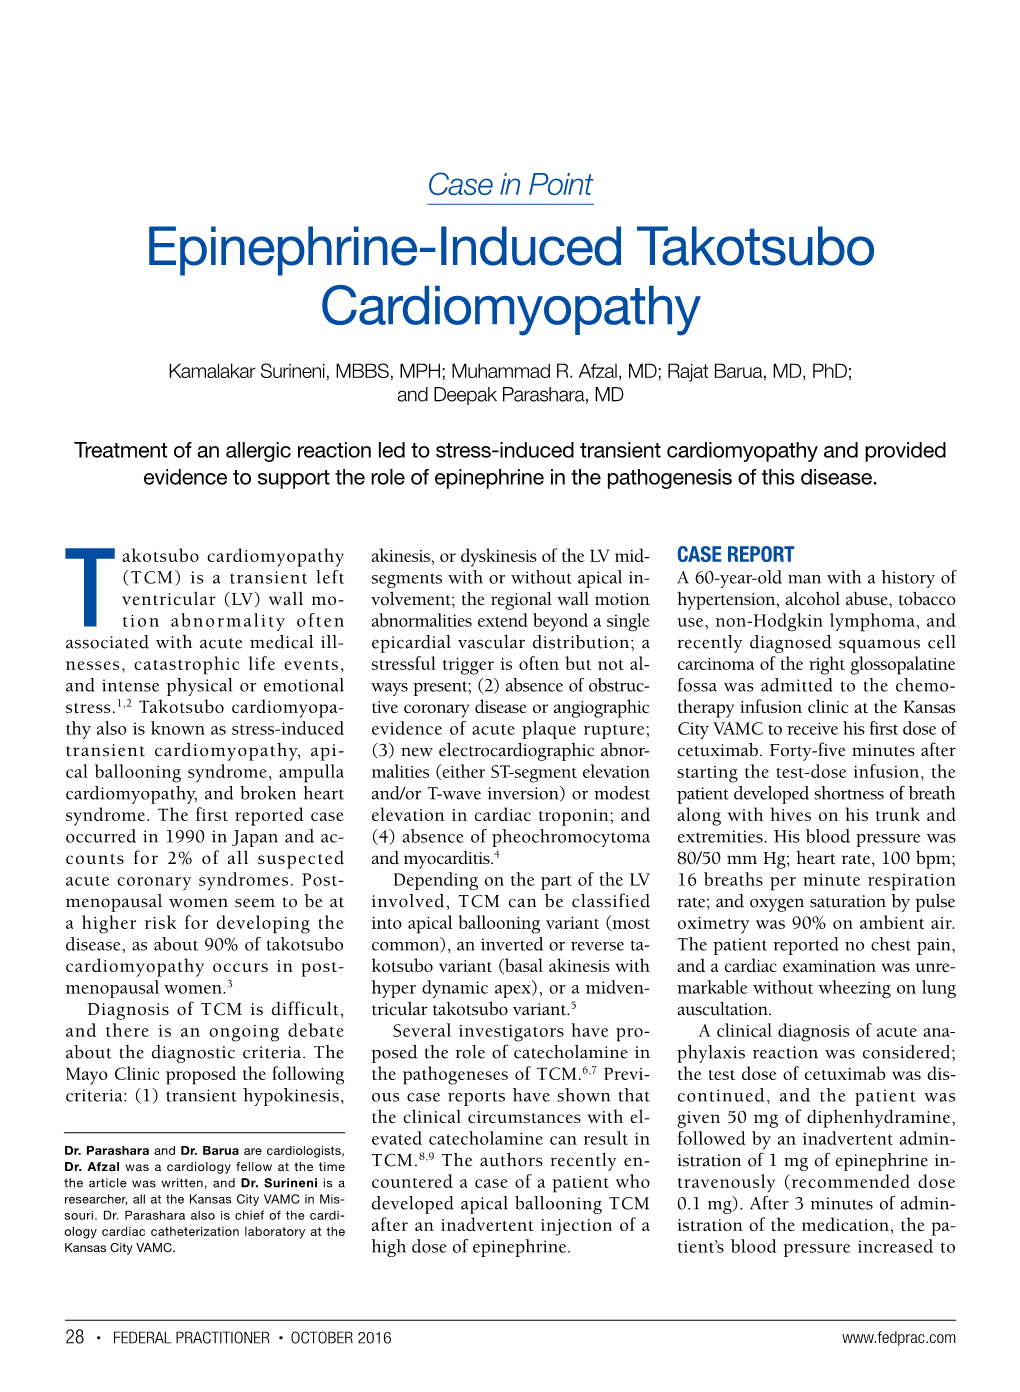 Epinephrine-Induced Takotsubo Cardiomyopathy